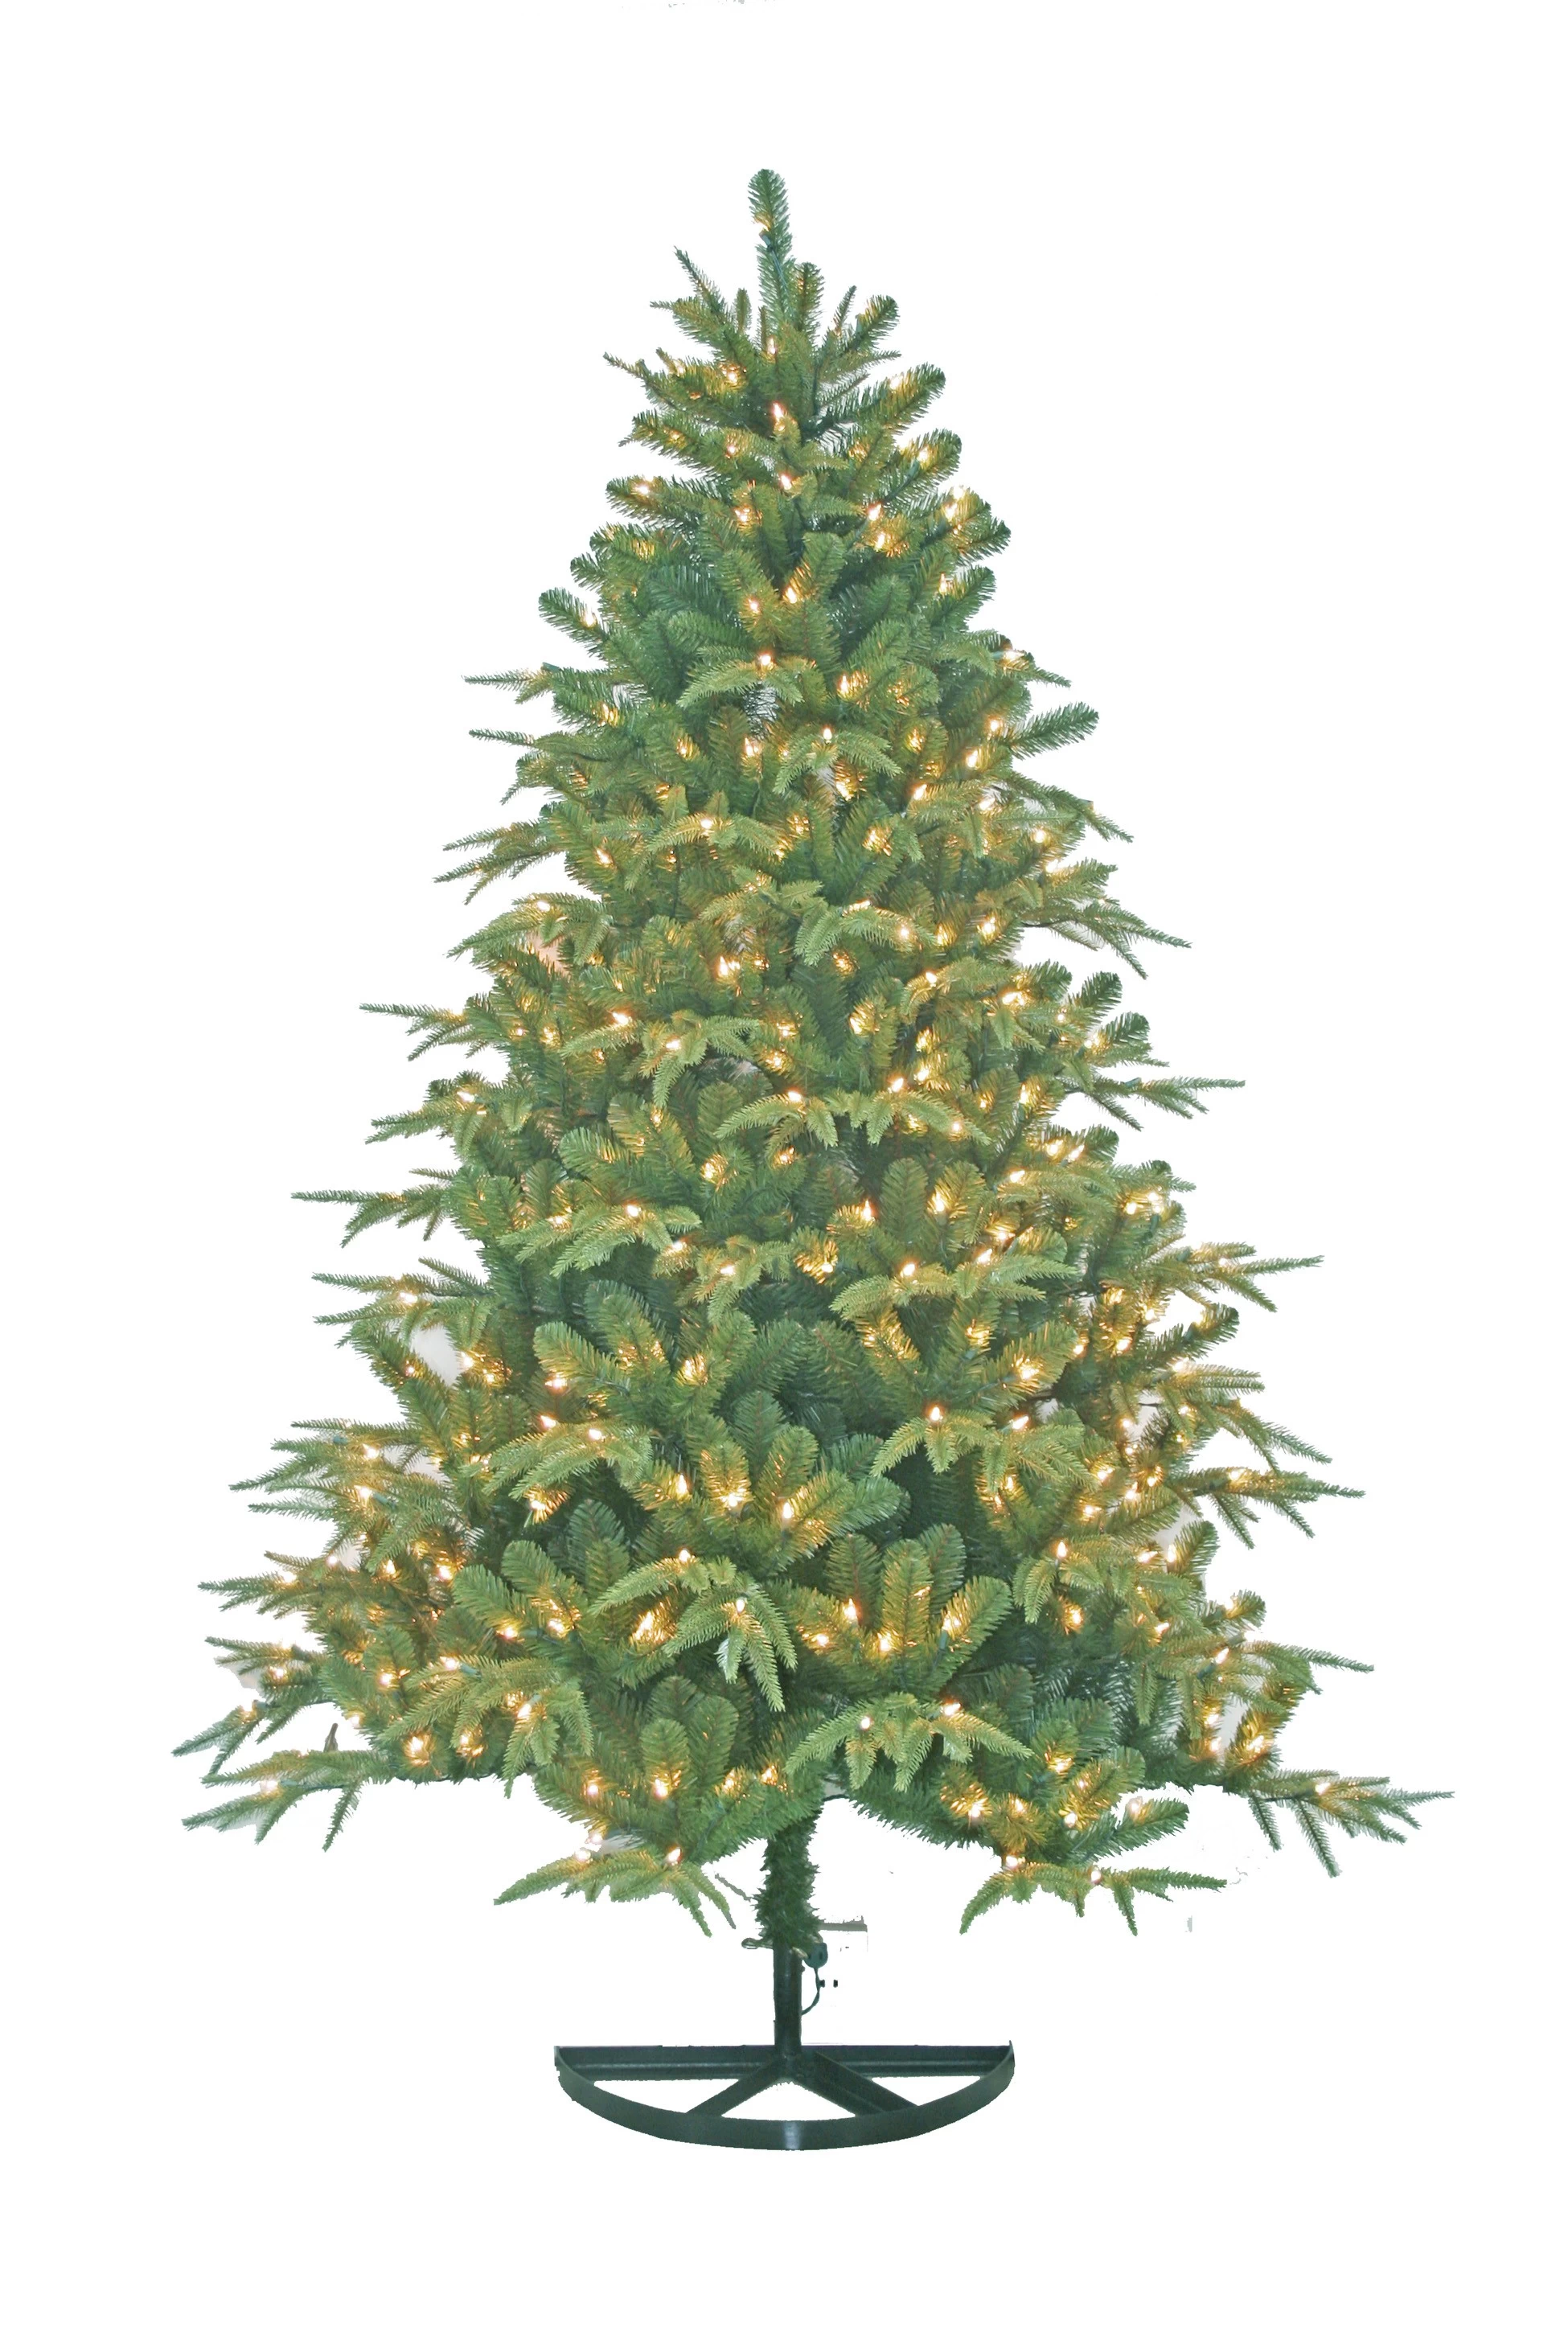 China Outdoor-Dekoration Weihnachtsbaum, künstliche Bäume, Bestseller-Weihnachtsartikel Hersteller